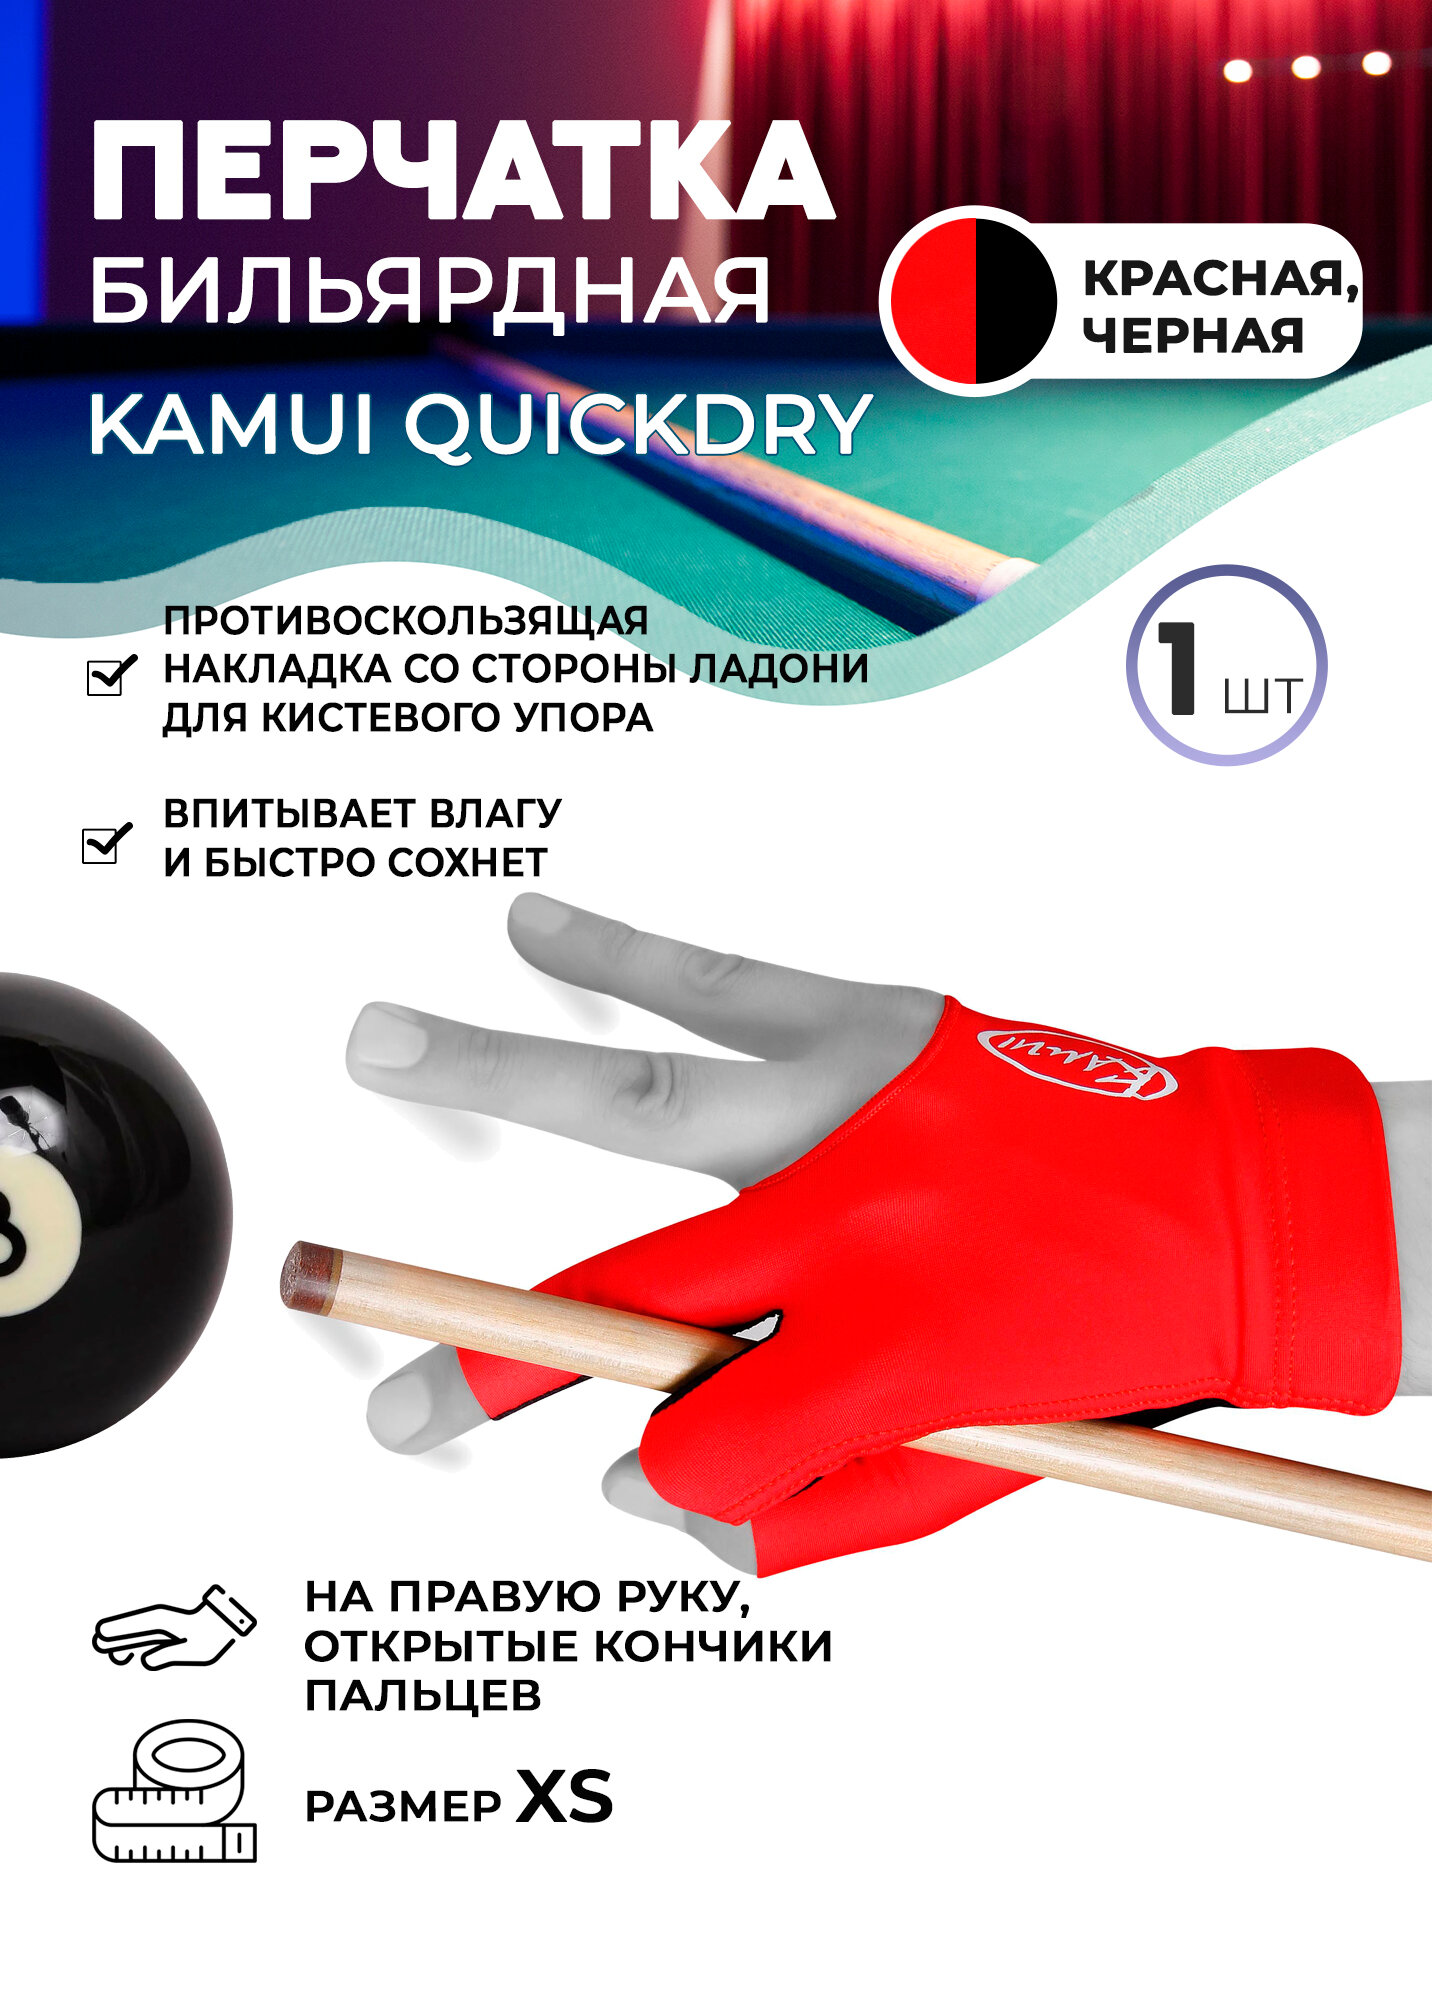 Бильярдная перчатка Kamui QuickDry красная (правая, размер XS)